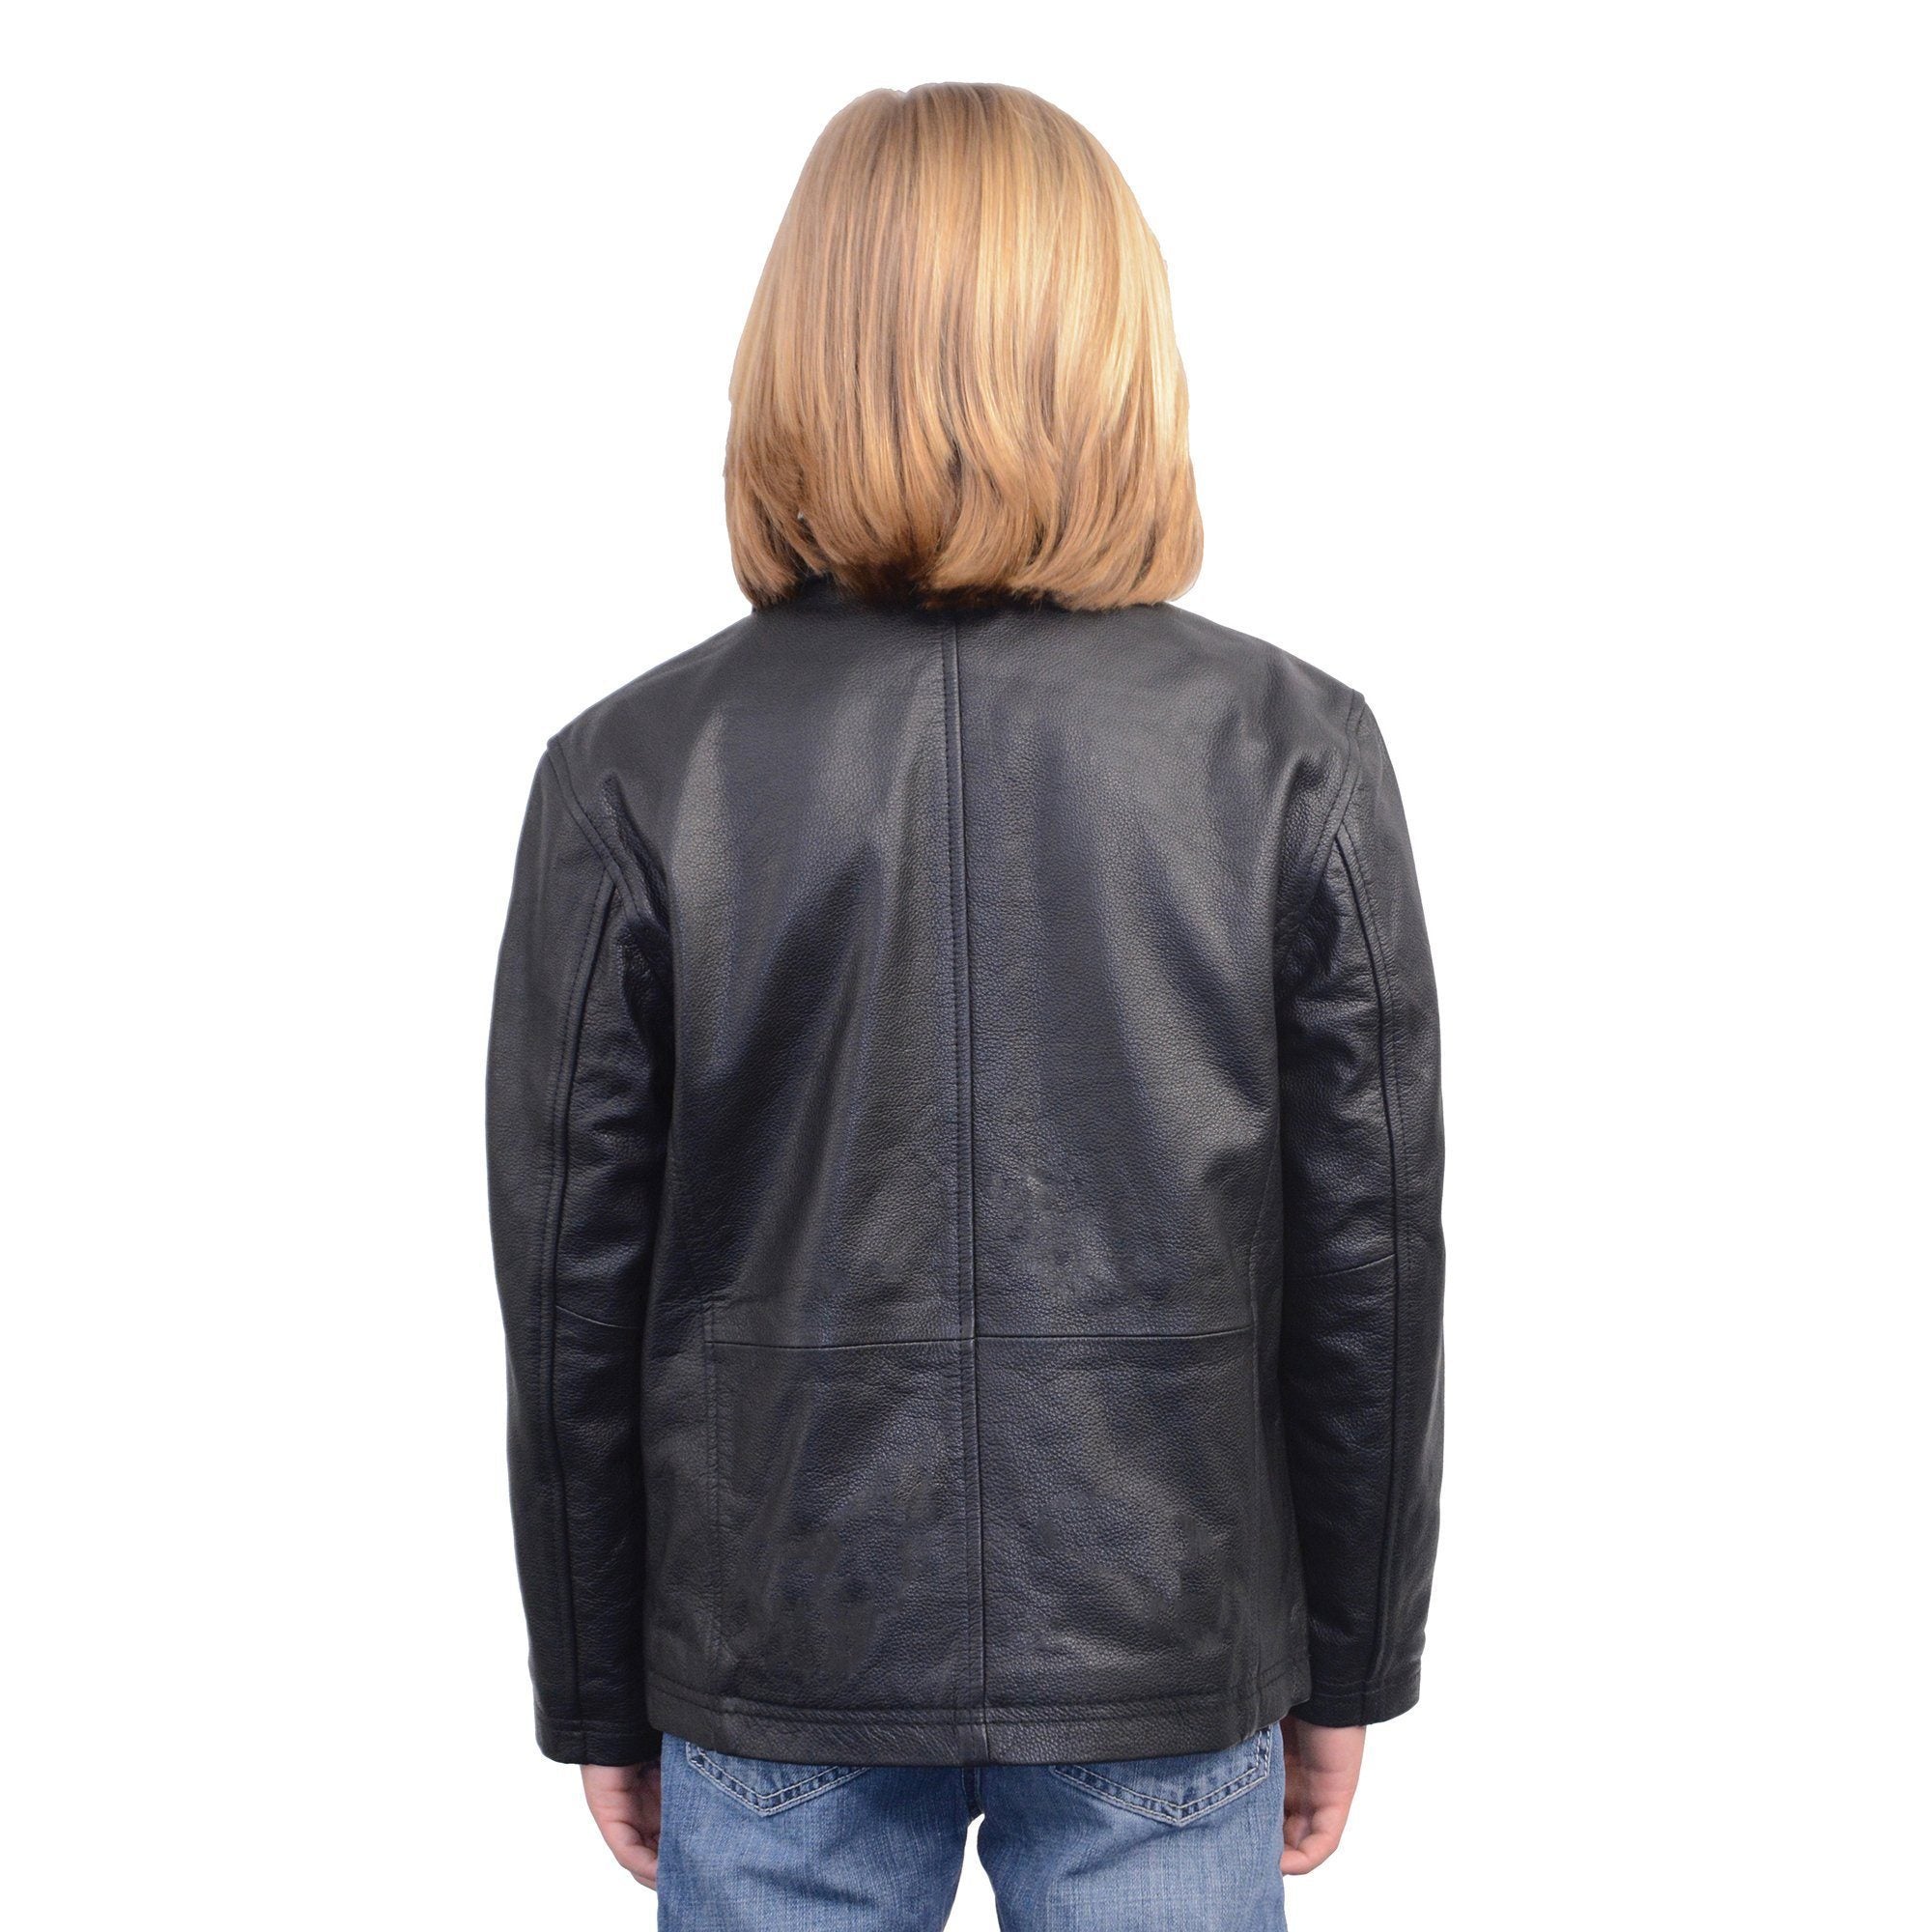 Milwaukee Leather LKK1940 Youth Size JD Black Leather Jacket with Front Zipper - Milwaukee Leather Boys Leather Jackets